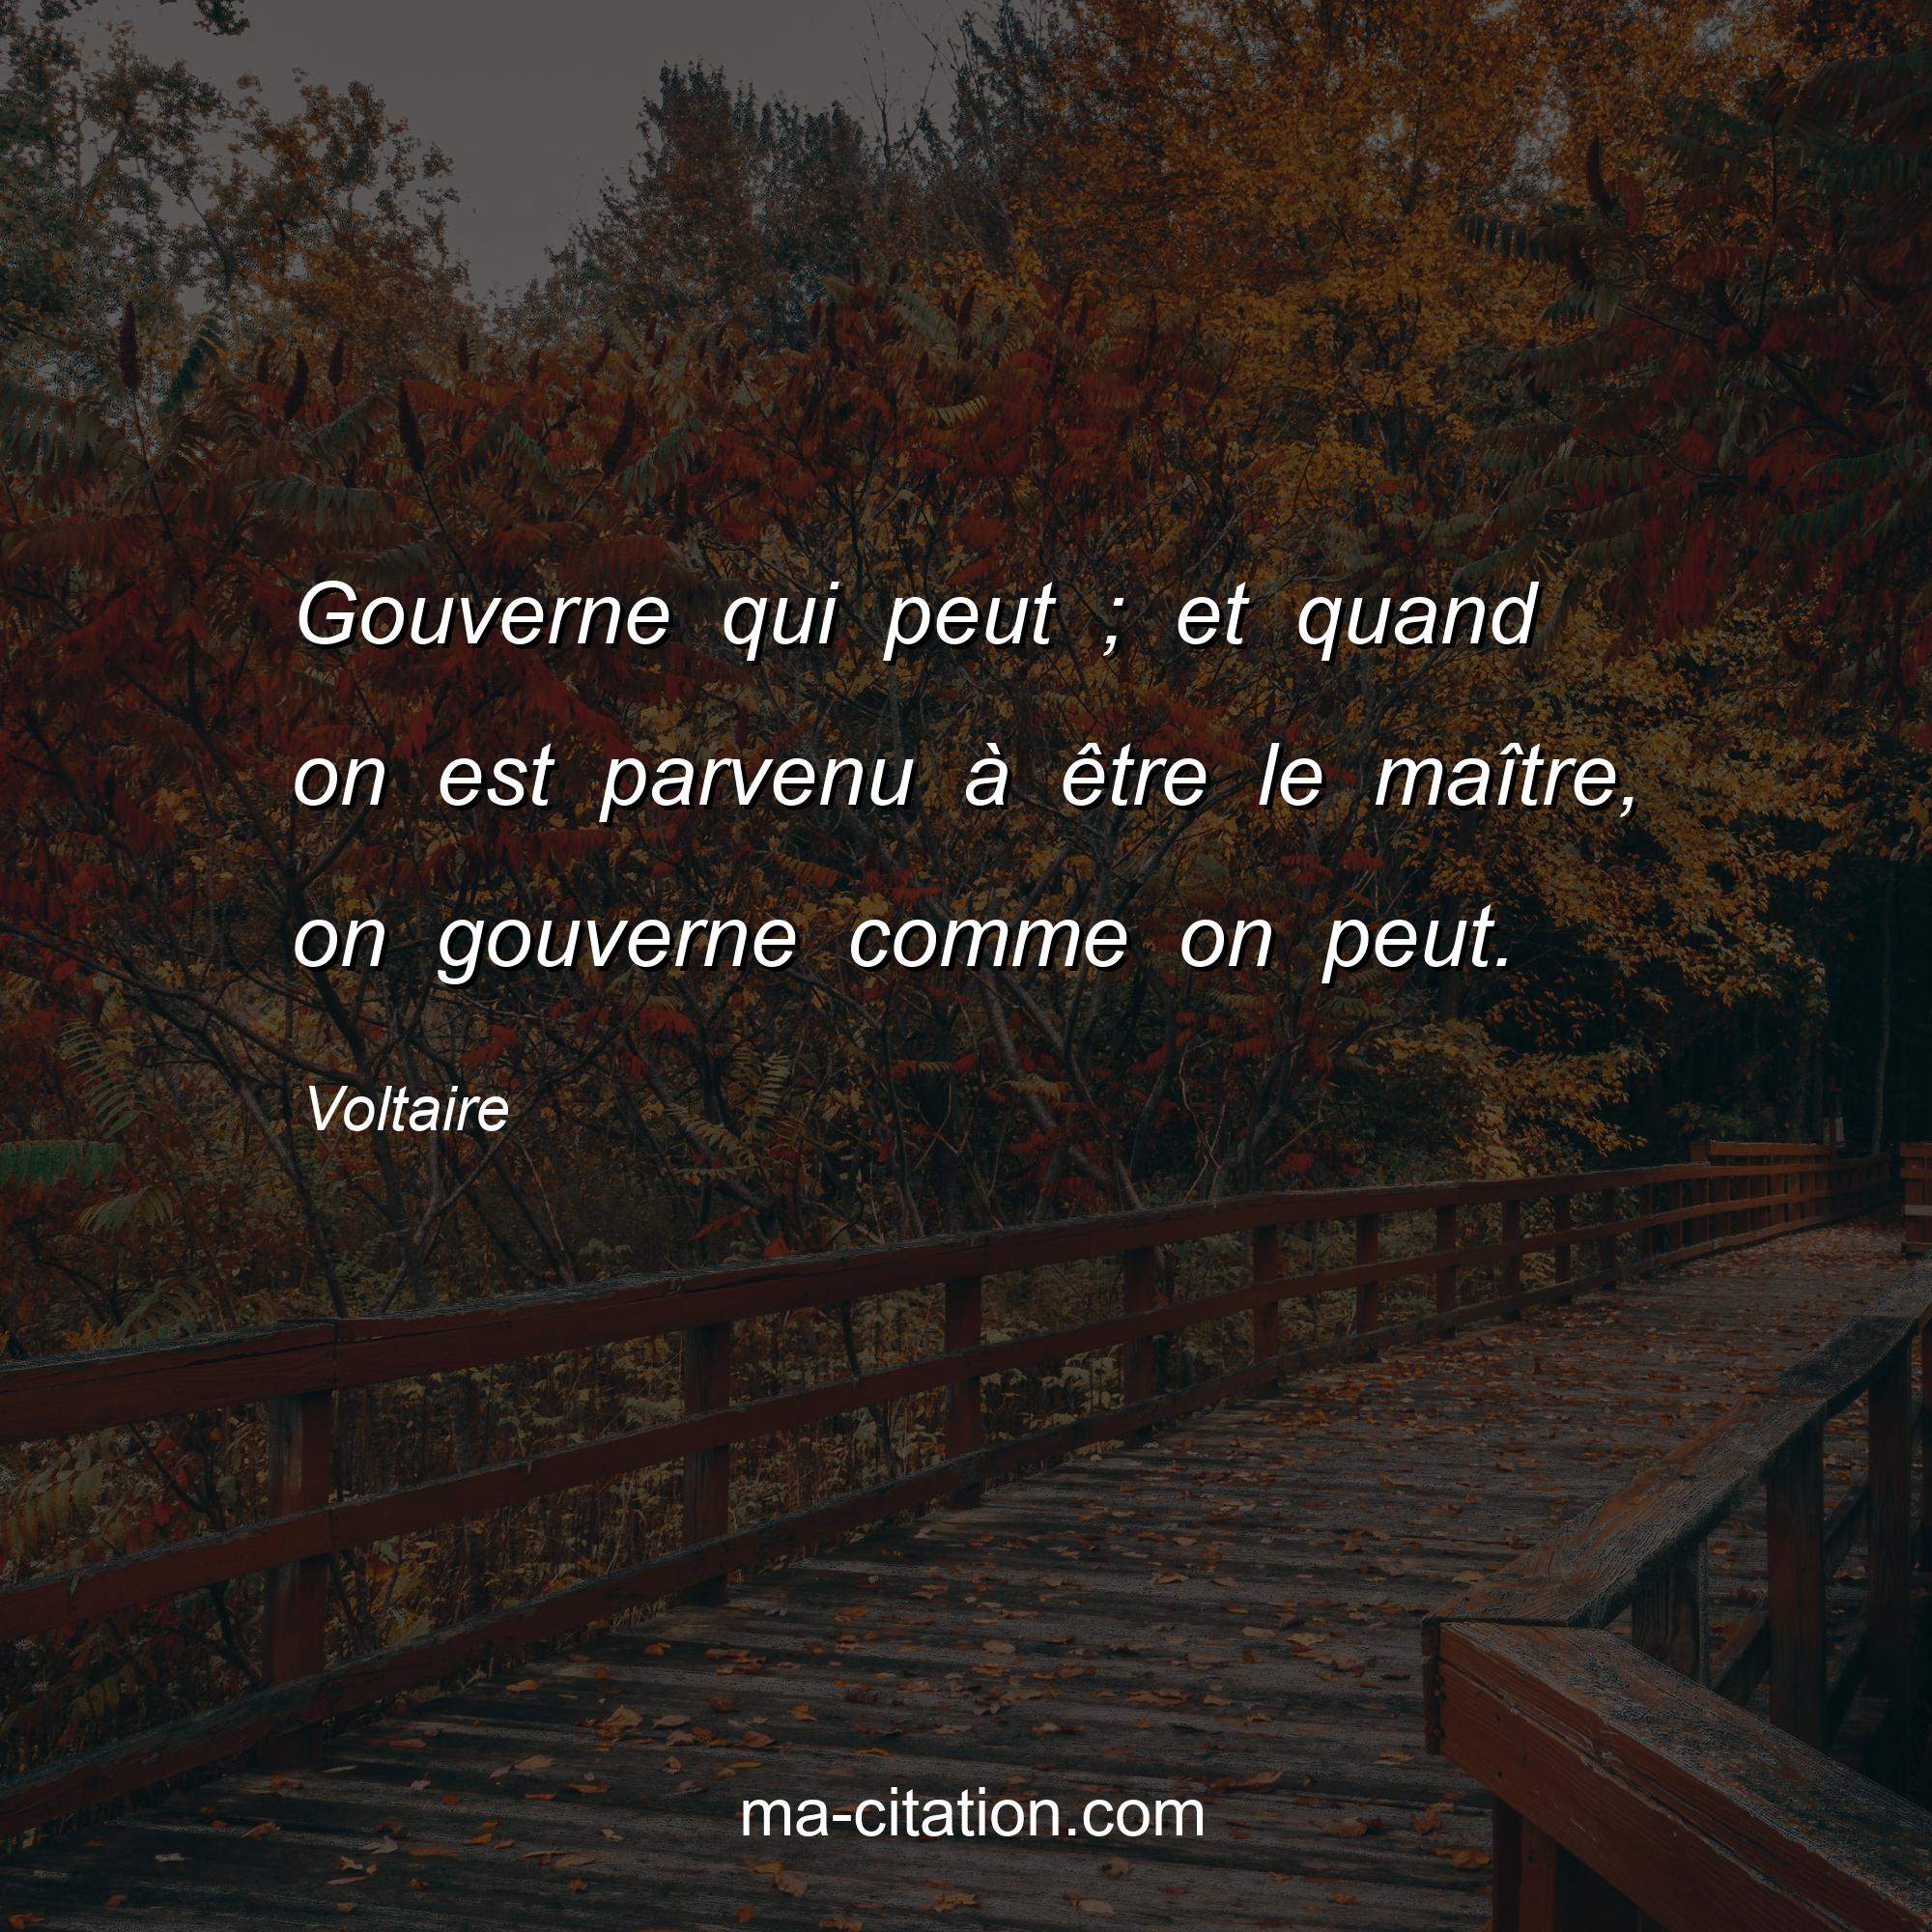 Voltaire : Gouverne qui peut ; et quand on est parvenu à être le maître, on gouverne comme on peut.